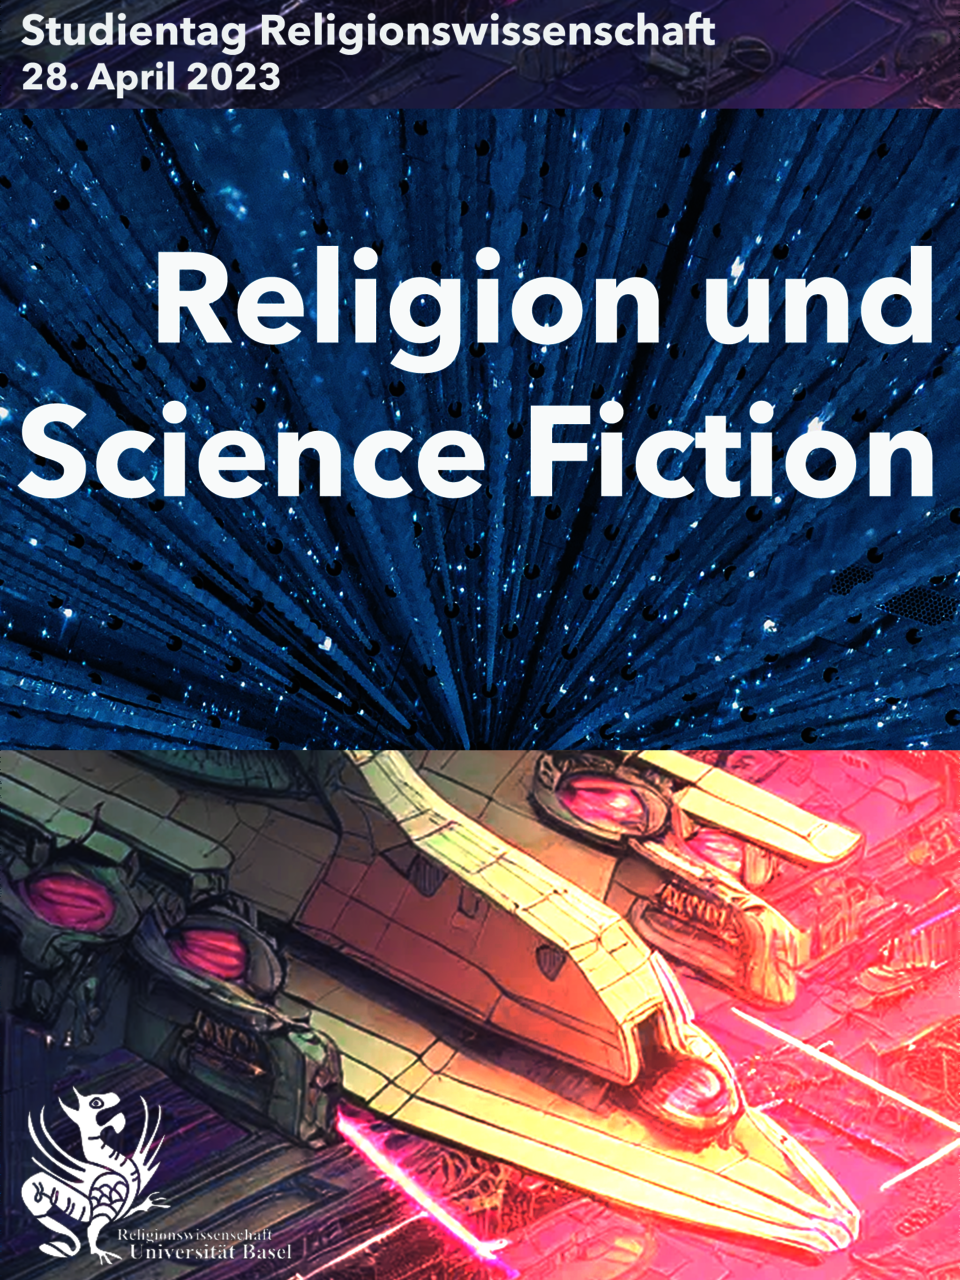 Flyer für den Studientag "Religion und Science Fiction". Es sind Ausschnitte zu sehen, welche Maschinen und Raumschiffe zeigen. 